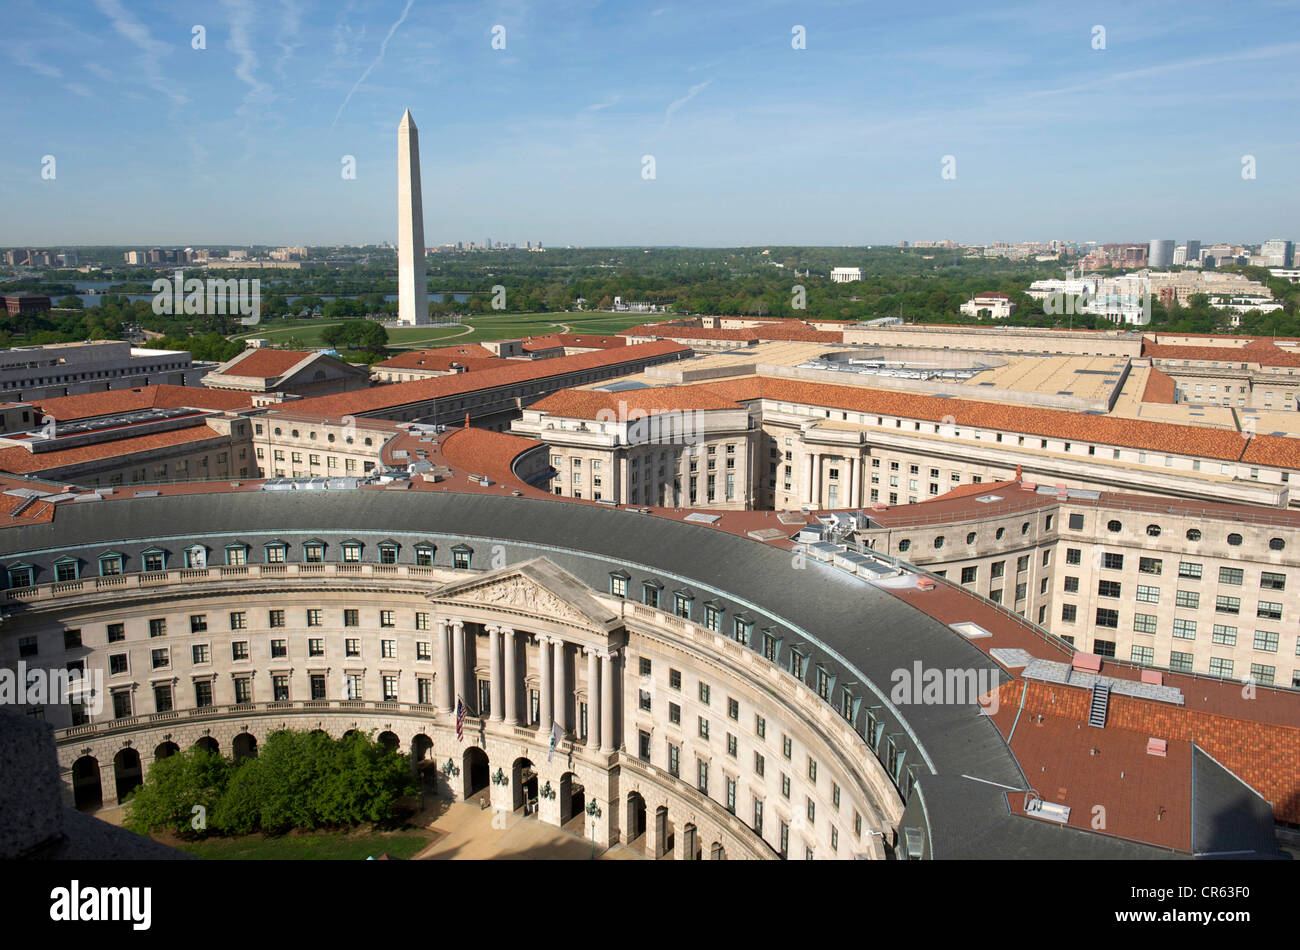 United States, Washington DC, The Mall with Washington Monument Stock Photo